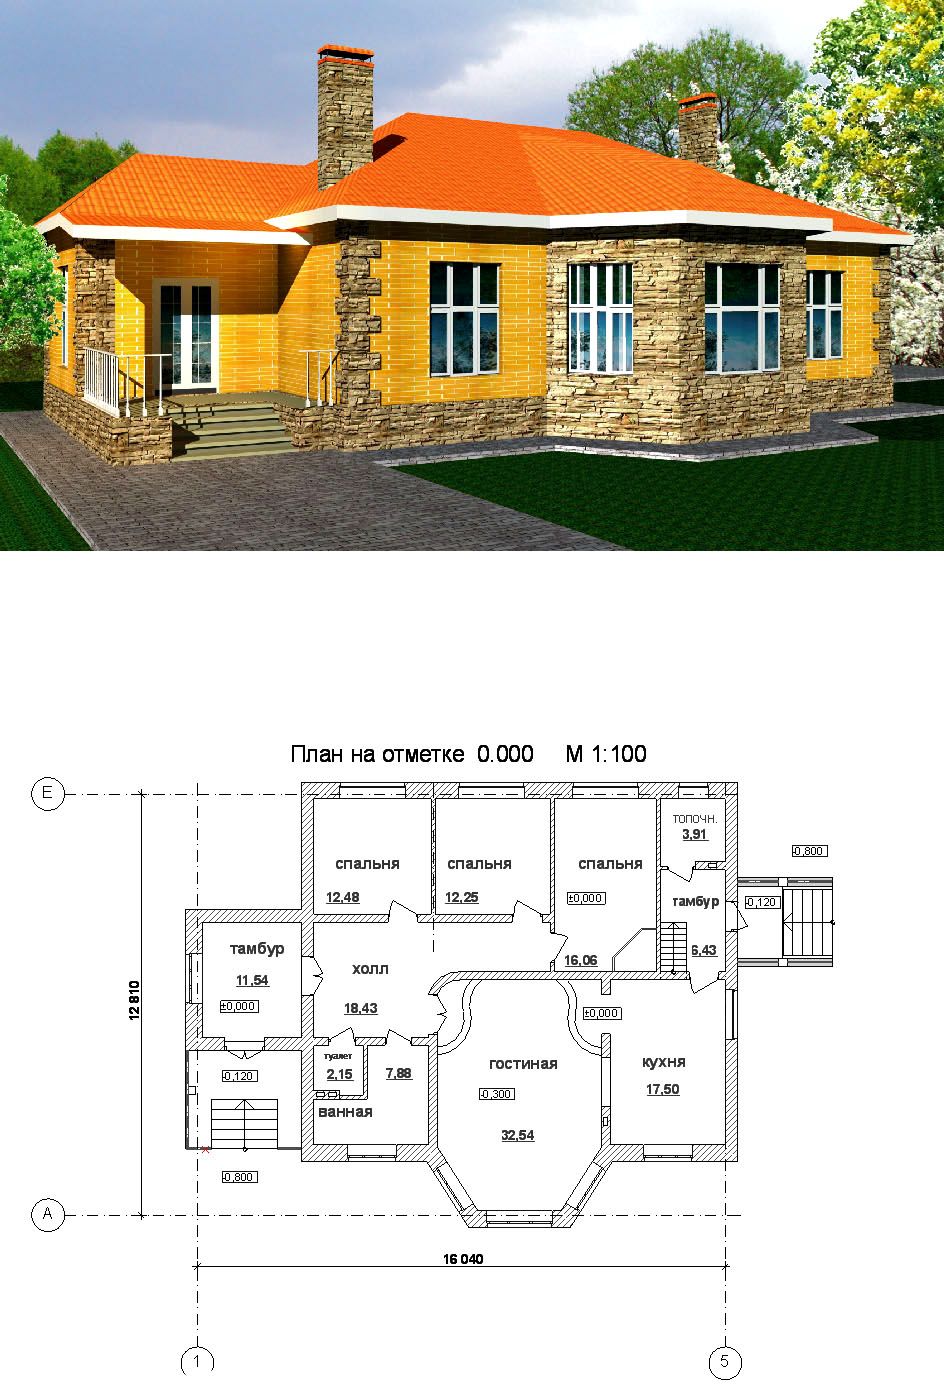 Планировка одноэтажного дома: фото дизайнов проектов одноэтажных домов с планировкой